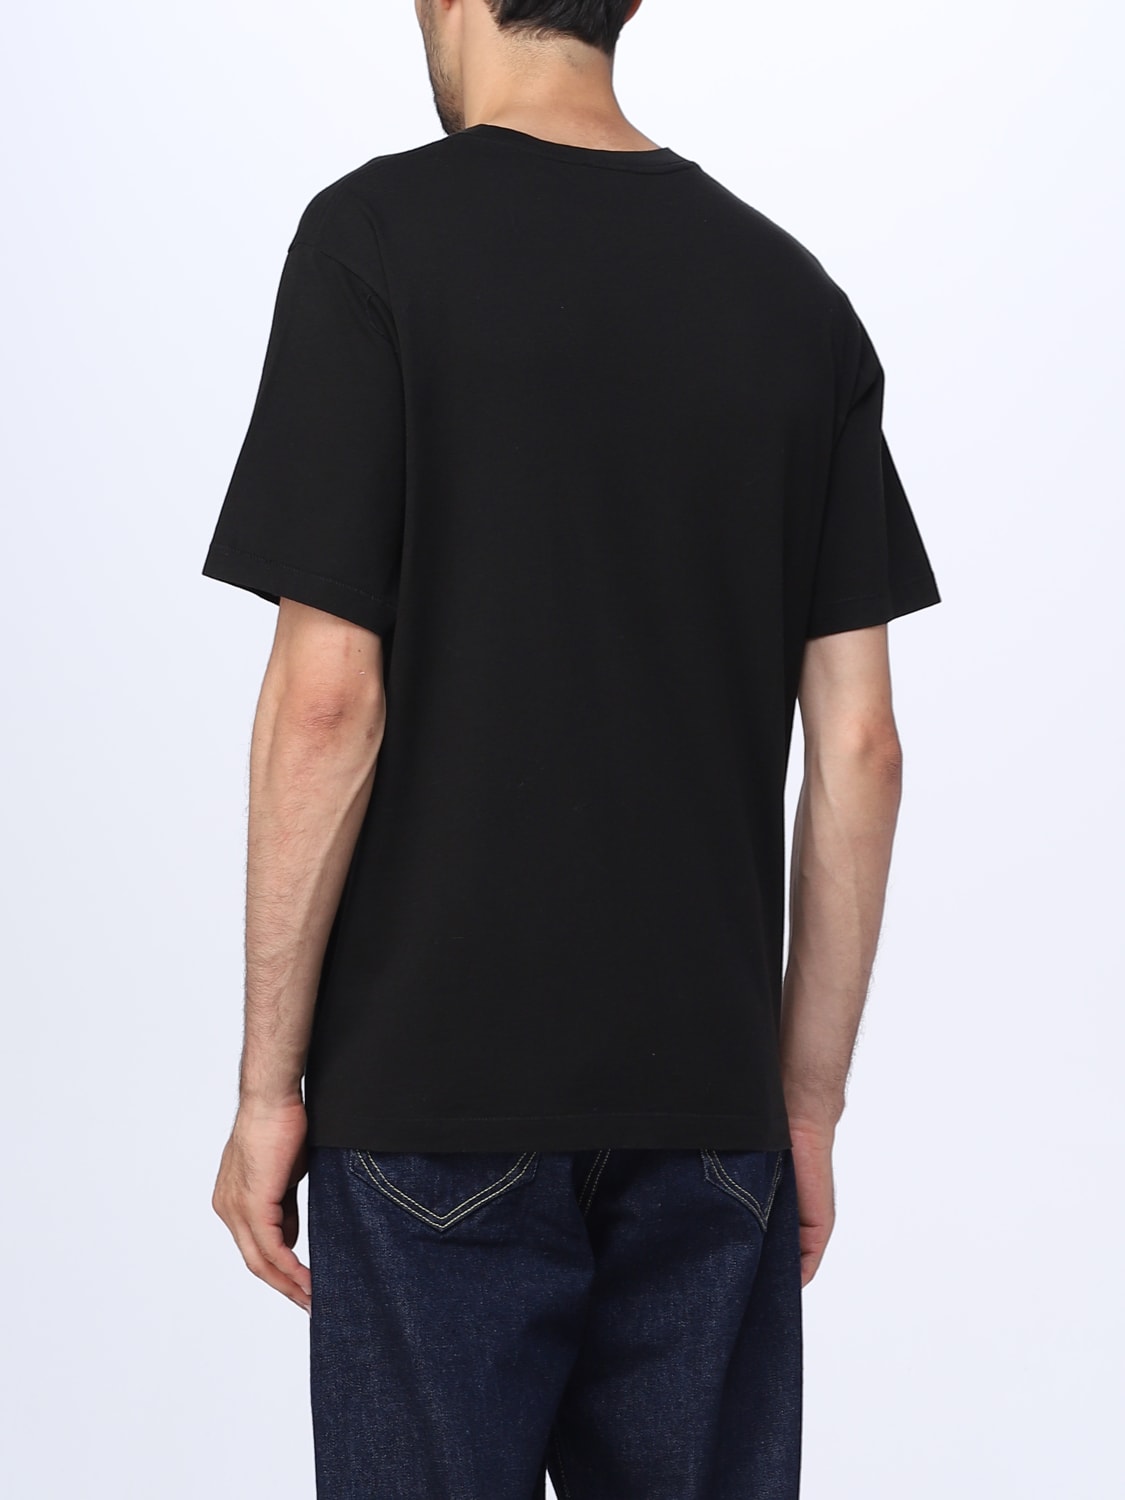 KENZO: Flower cotton t-shirt - Black | KENZO t-shirt FC65TS4124SG ...